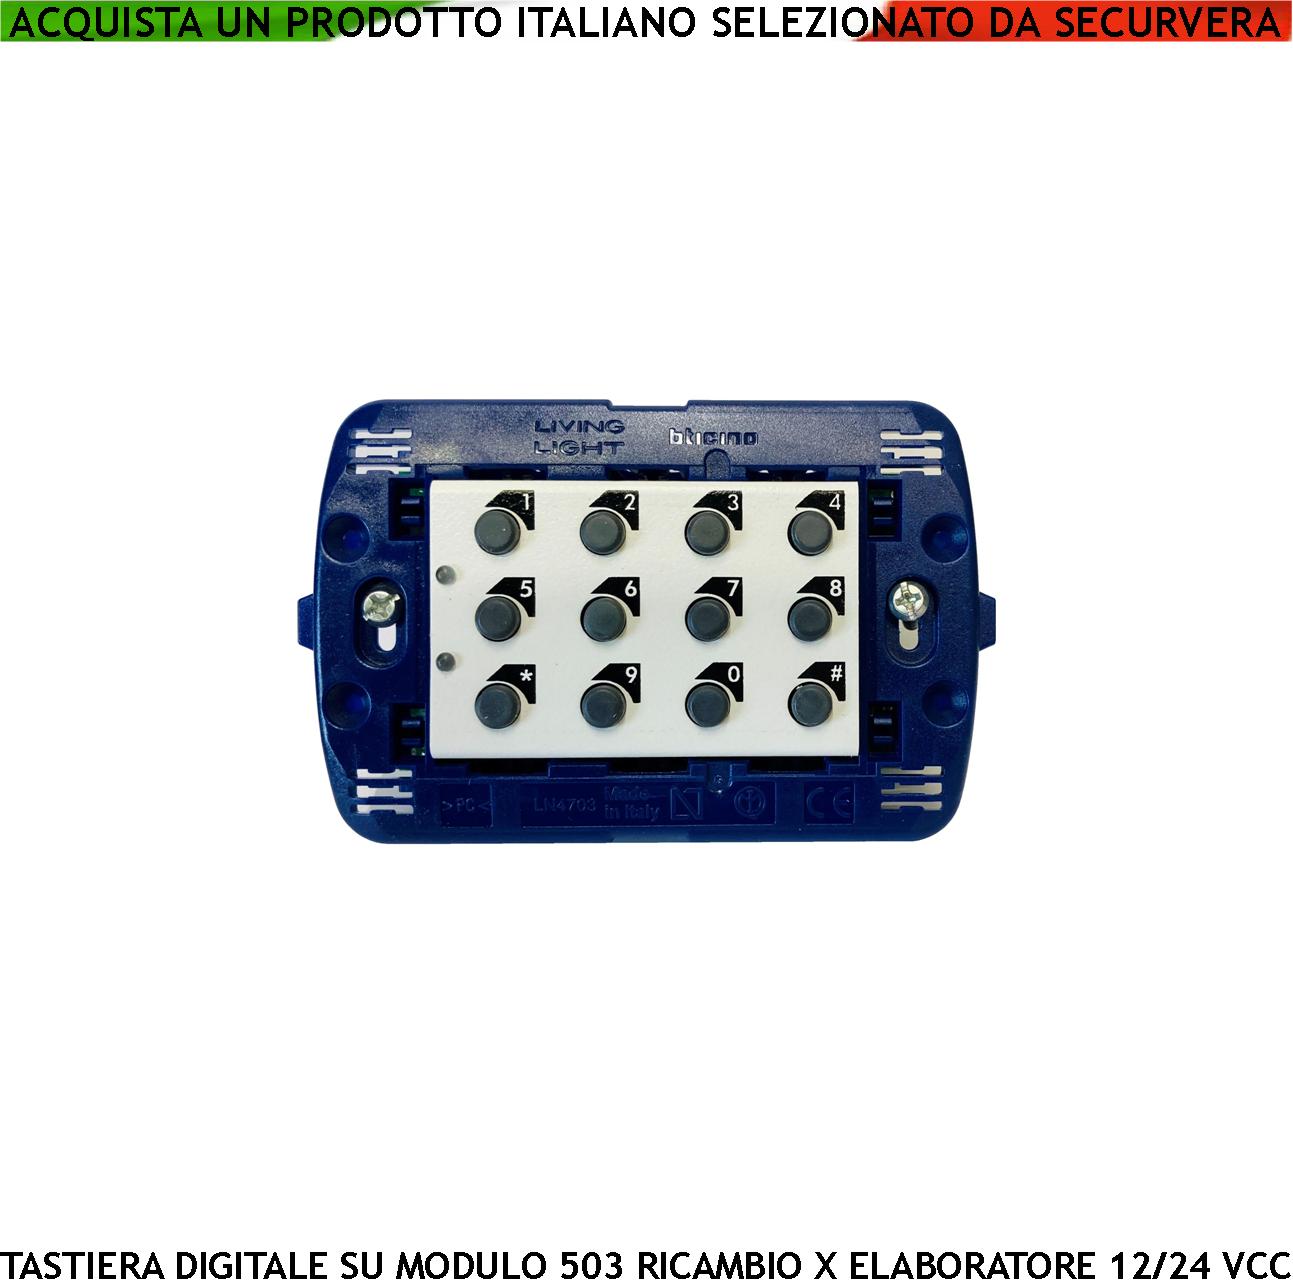 Tastiera Digitale Interna Modulo 503 IP44 Ricambio per Elaboratore SV-KBC o  SV-KBV 2 Led Rosso Verde Funzioni e Alimentazione Tramite Bus Collegato  Centralina